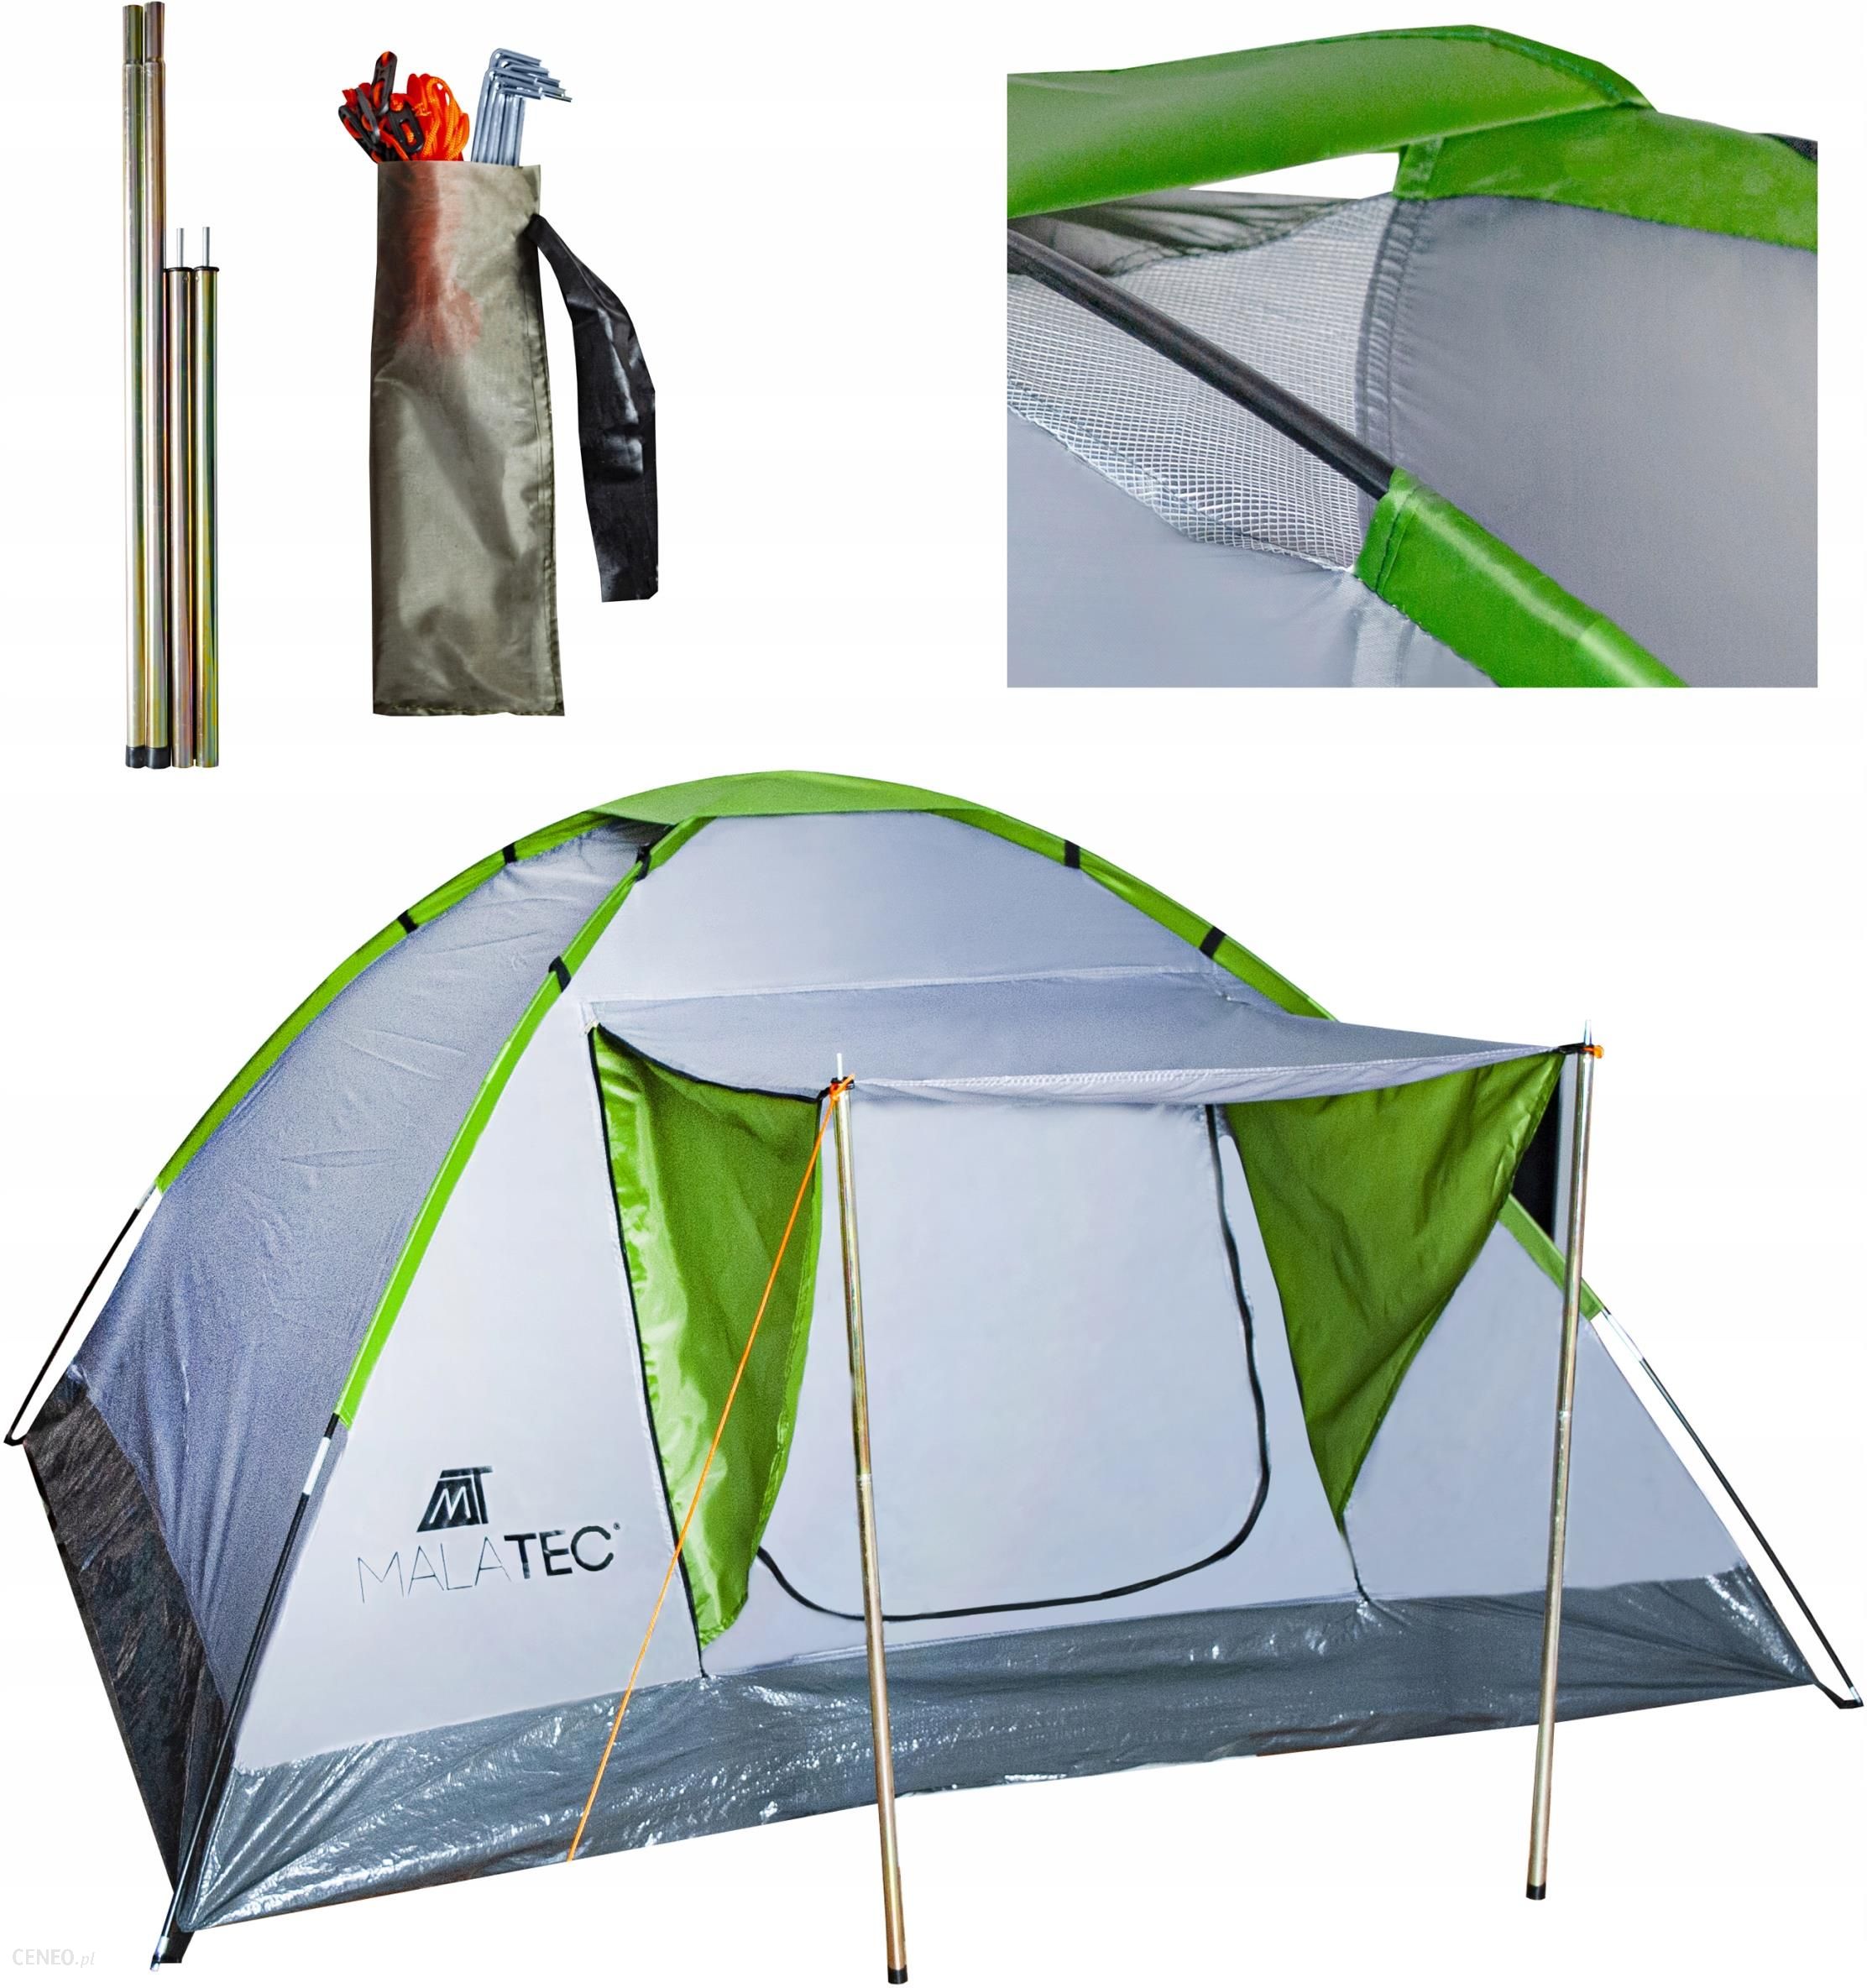 Рейтинг палаток туристических на 4 человека. Палатка 4 местная Монтана тент. Палатка Royokamp Splash Tourist Tent. Палатка 4-местная Camping Keeper автоматическая. Палатки терка тенс 4 местная с козырьком.